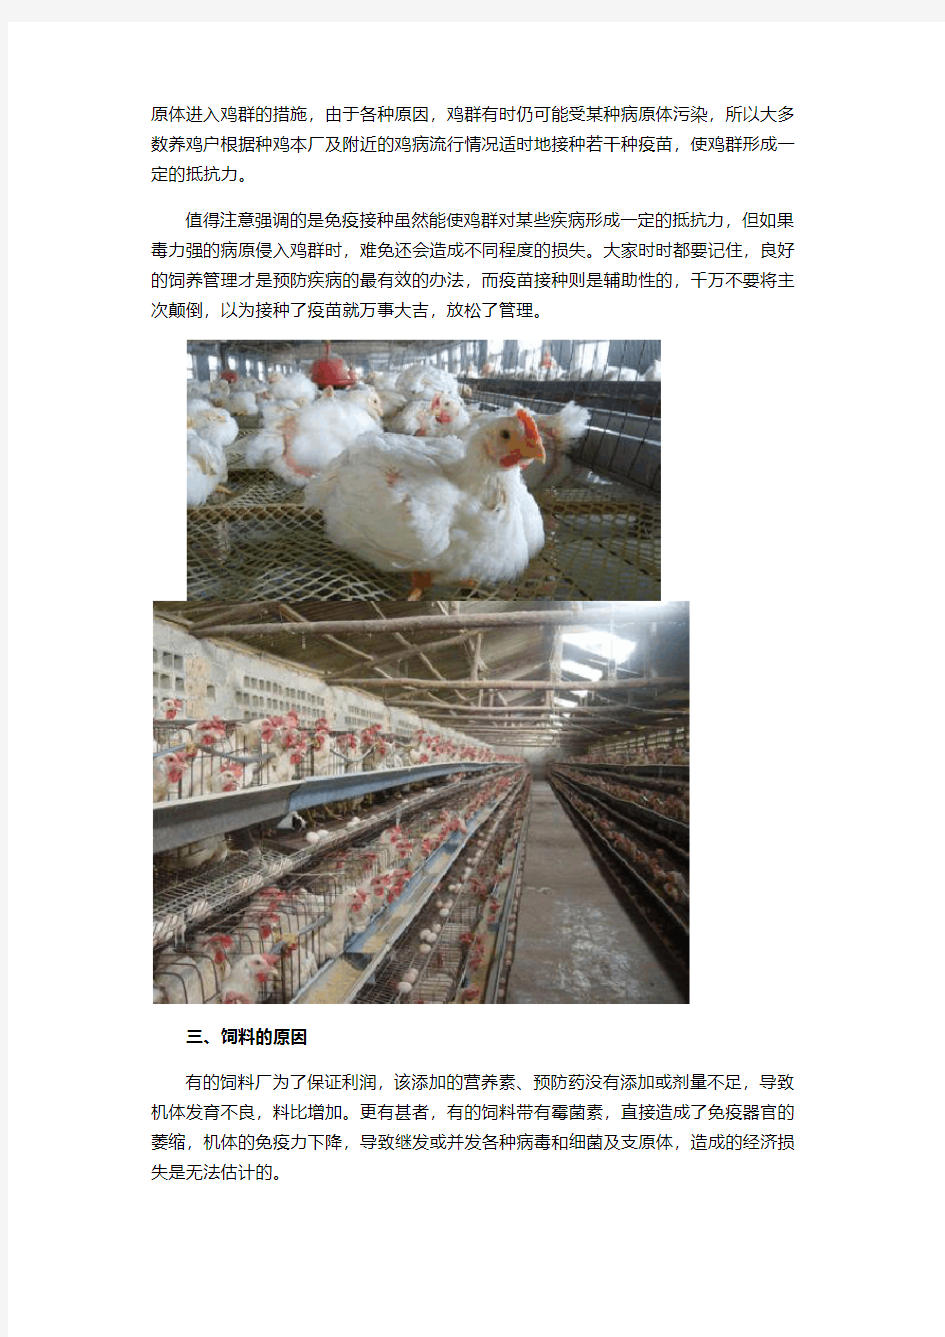 肉鸡养殖肉鸡817面临的饲养问题6大方向分析